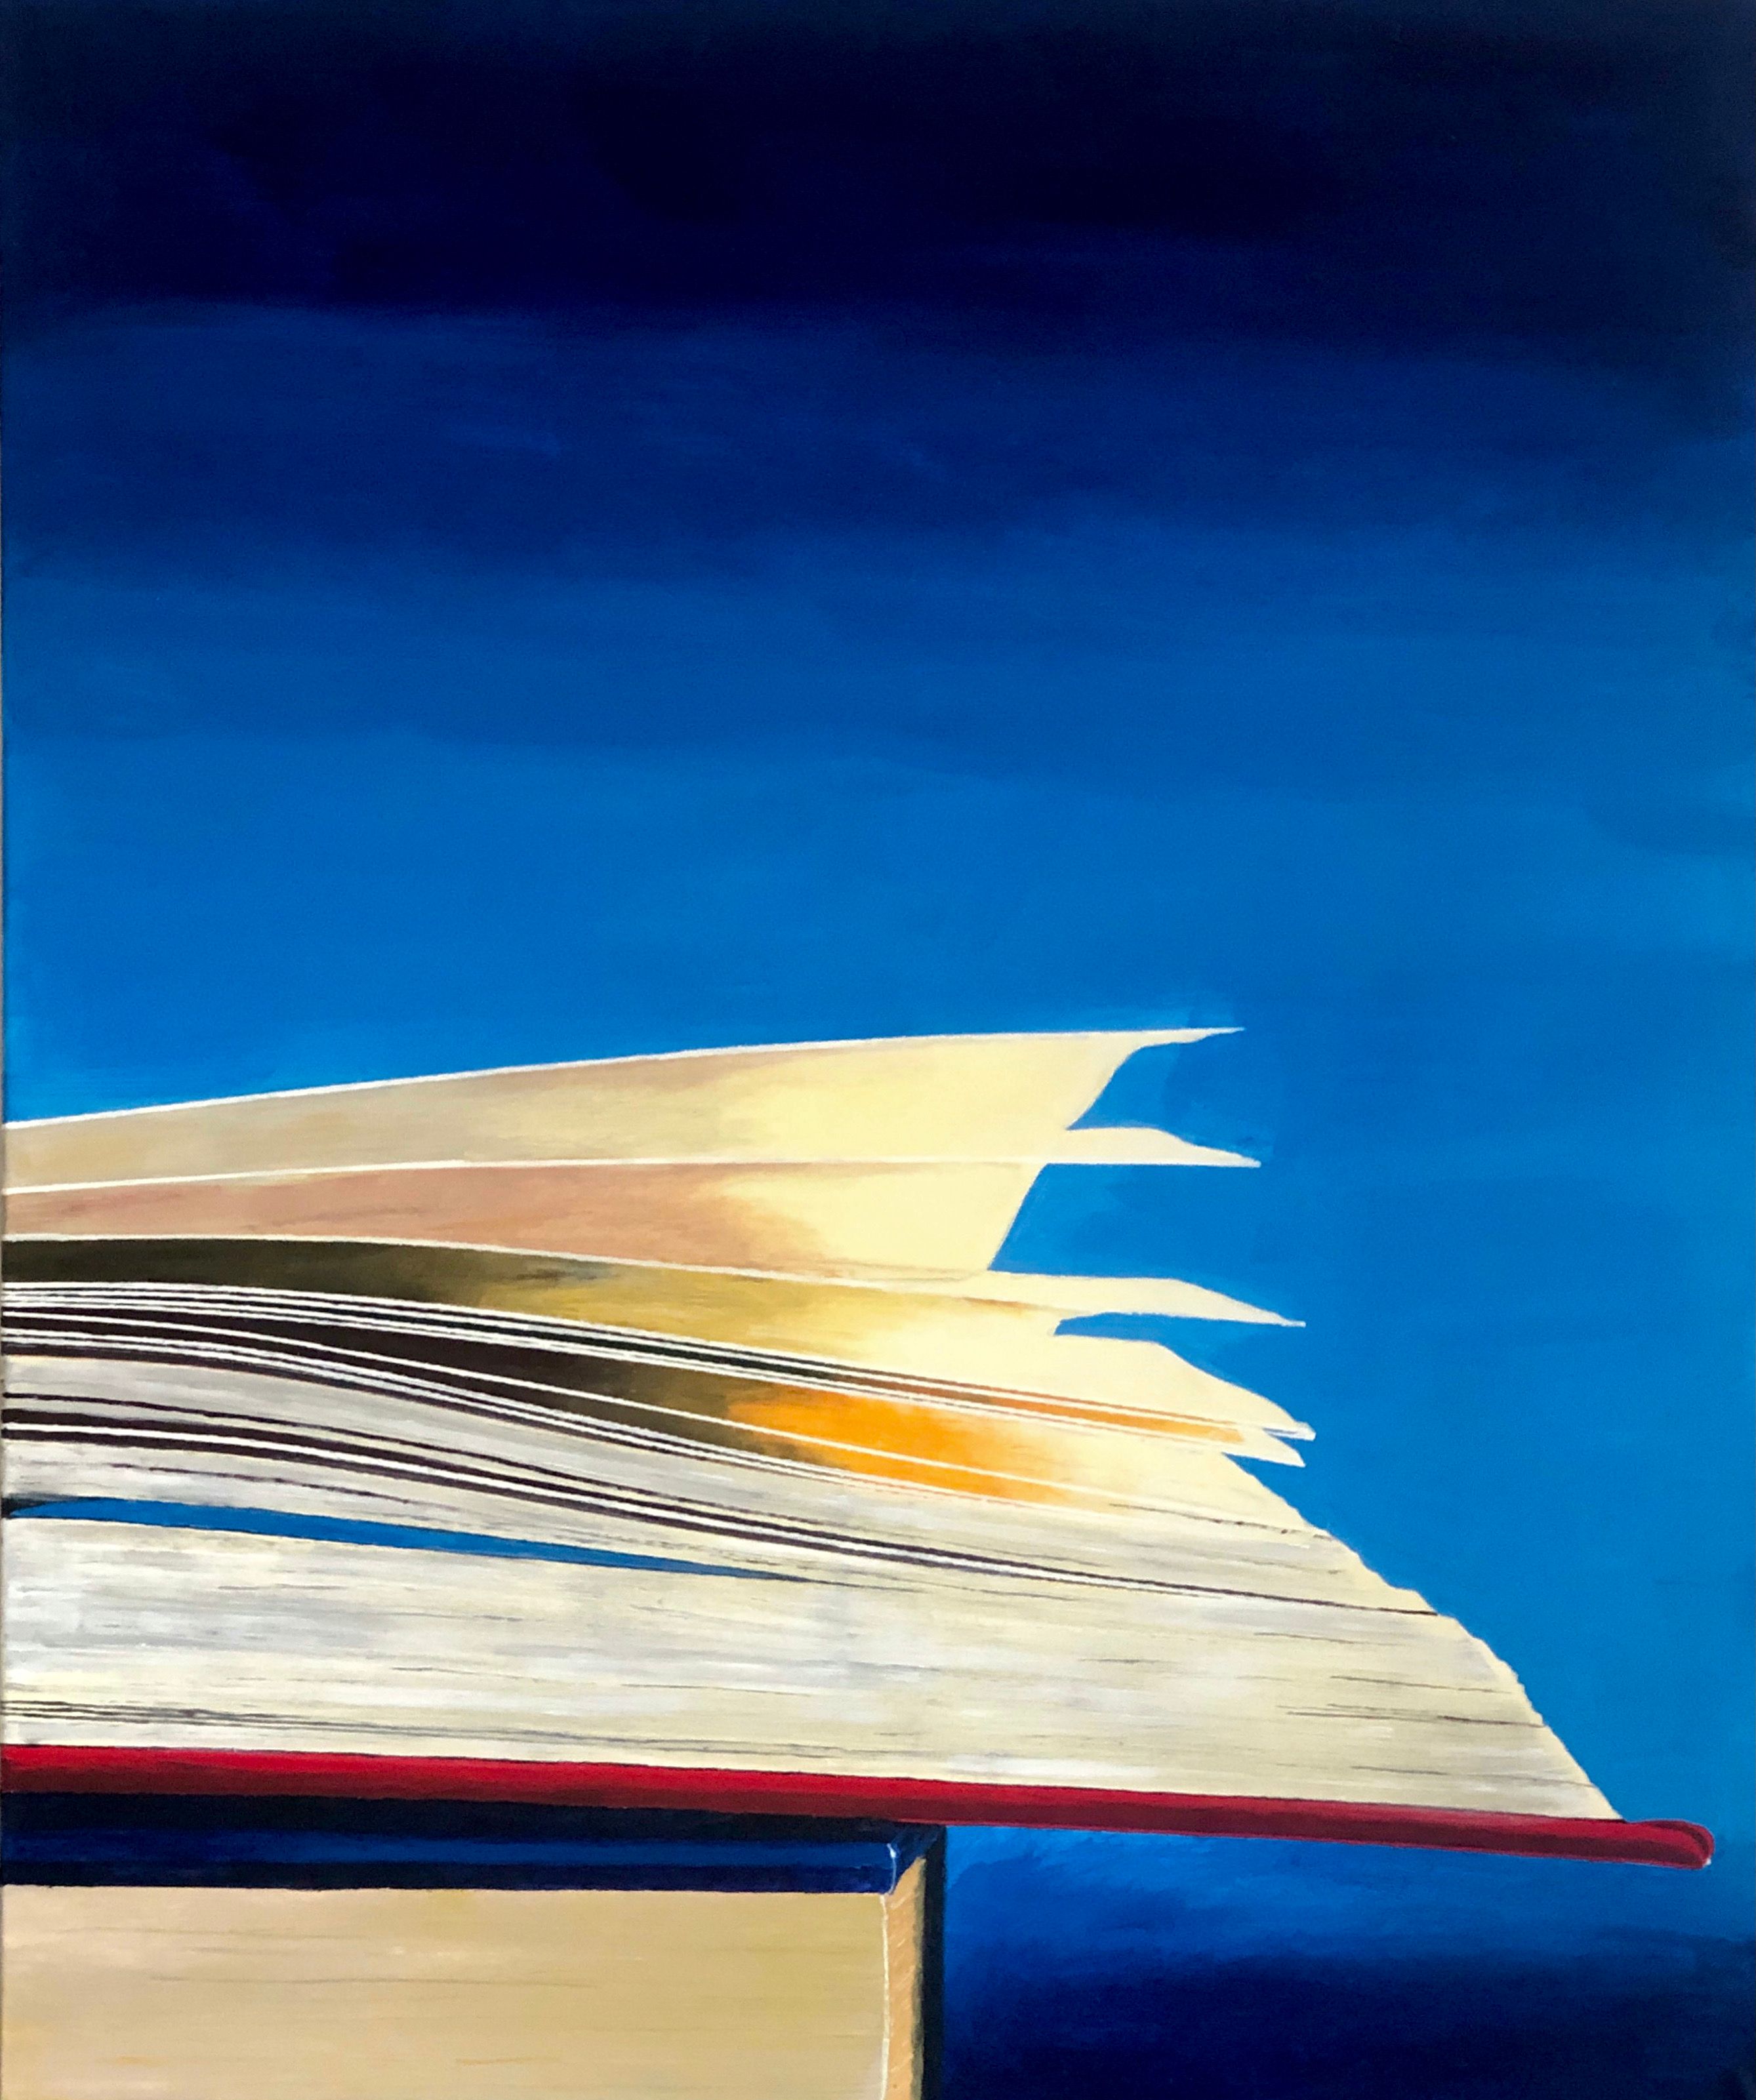 Rolf Gnauck "VV" Detallada pintura en color de gran formato de un libro abierto